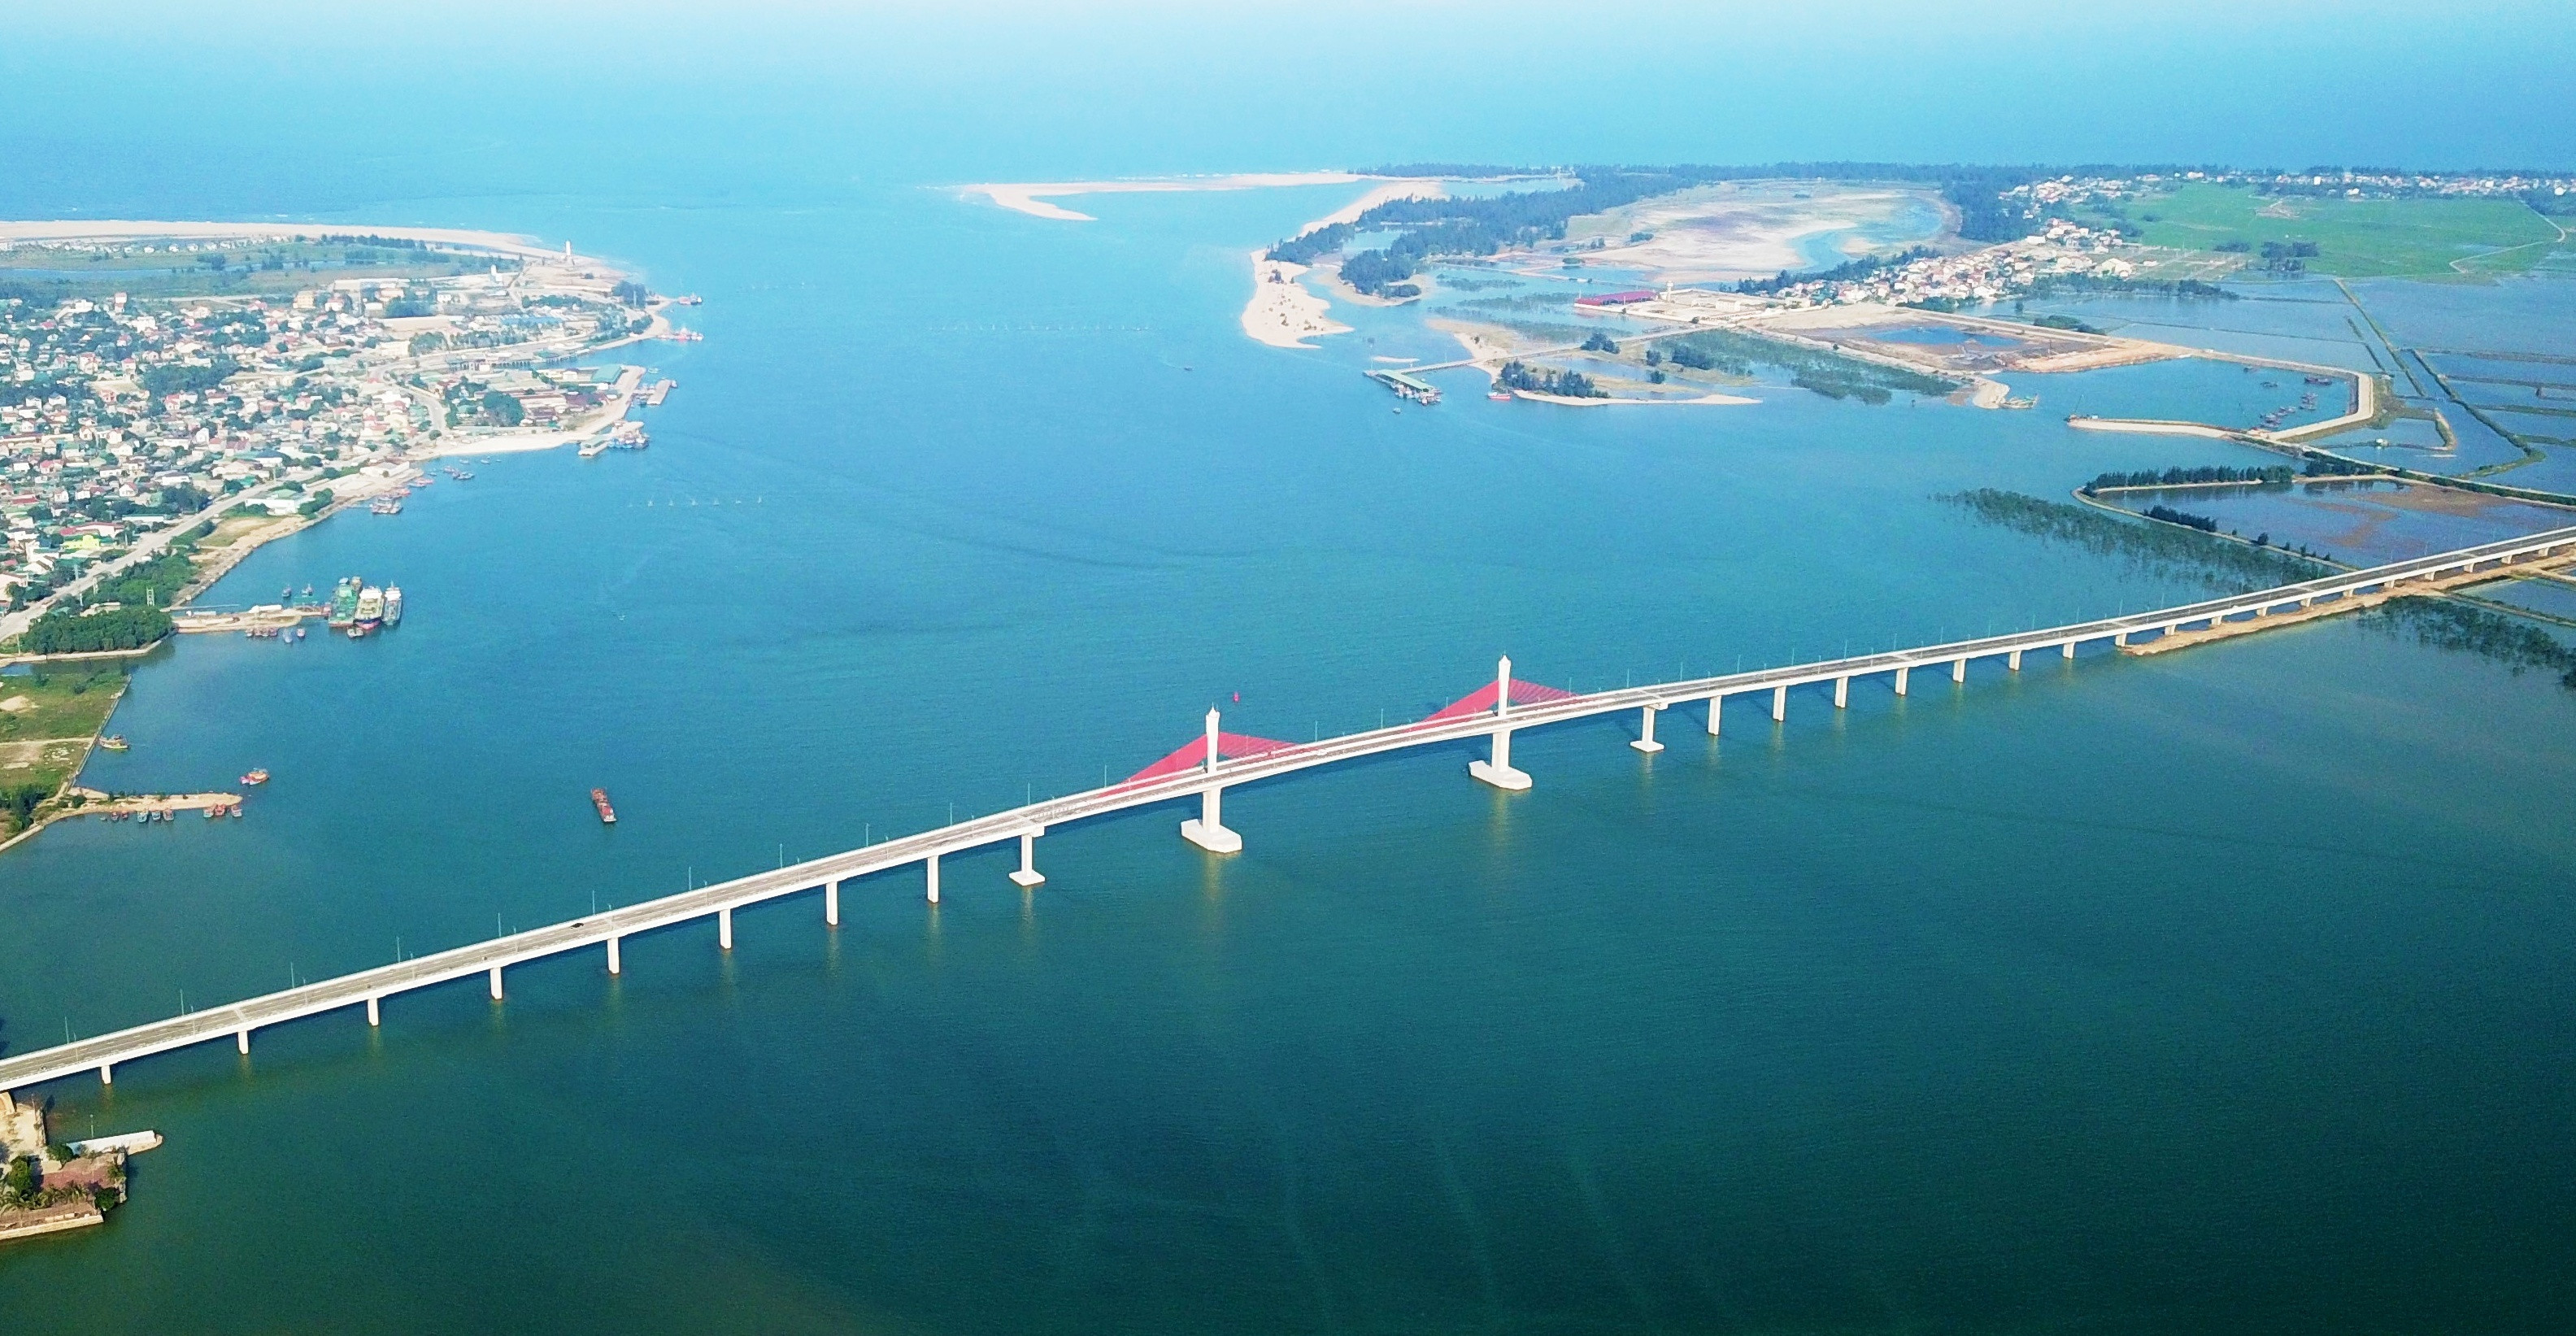 Cầu Cửa Hội bắc qua sông Lam, ảnh CTV.jpeg